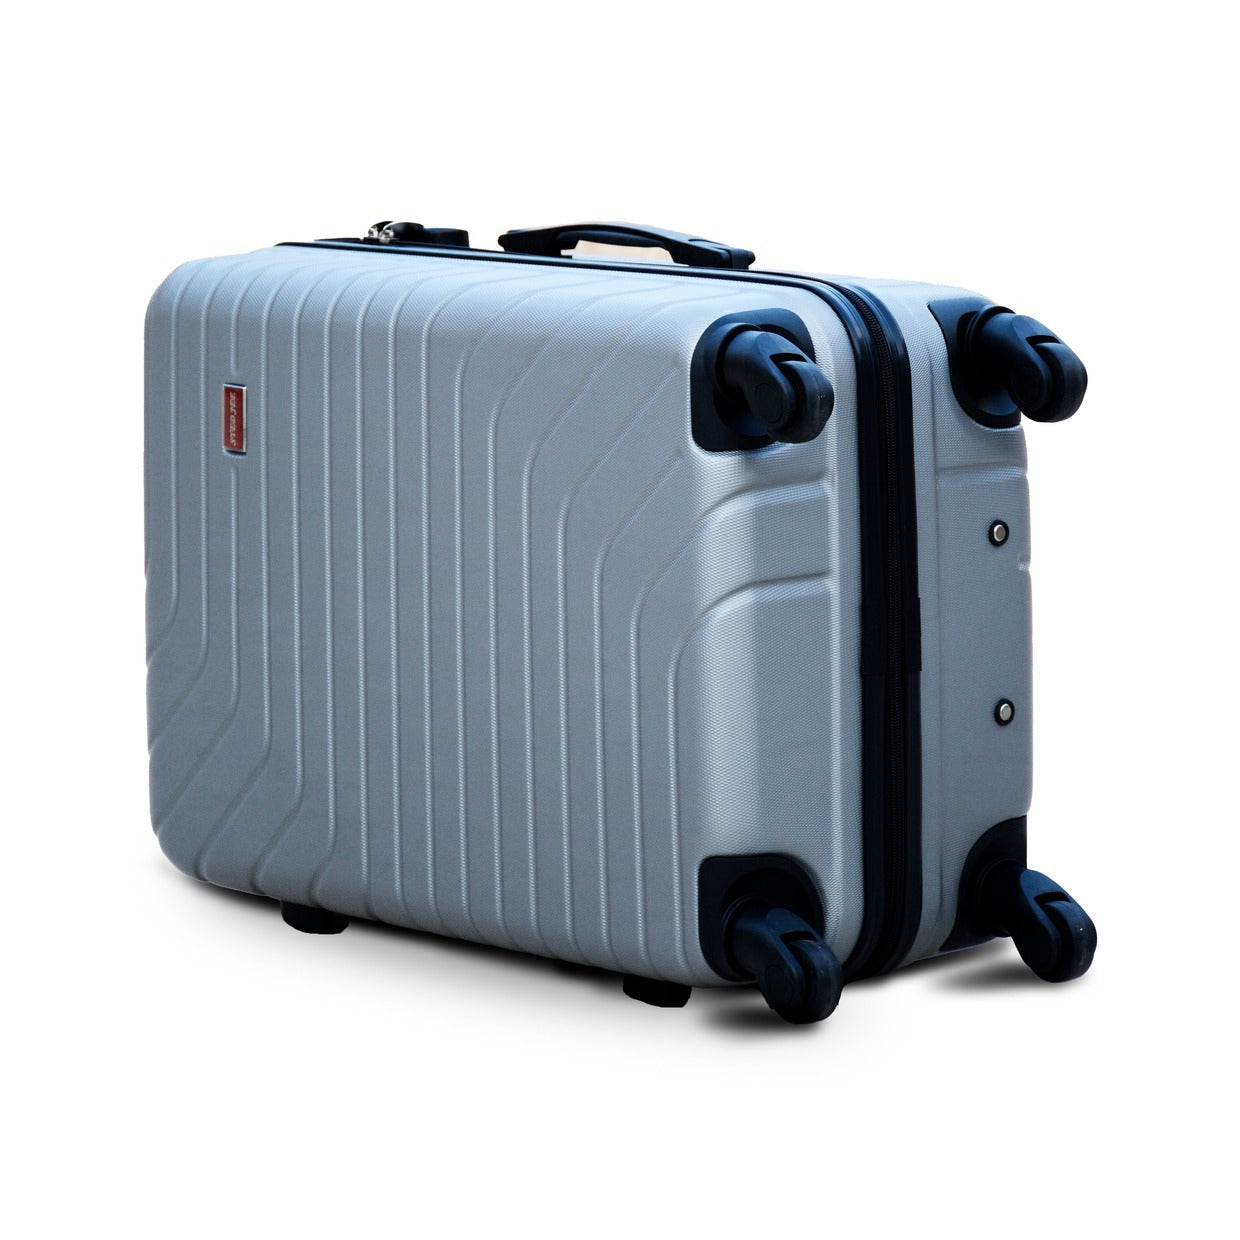 24" Grey Colour SJ ABS Luggage Lightweight Hard Case Trolley Bag | 2 Year Warranty